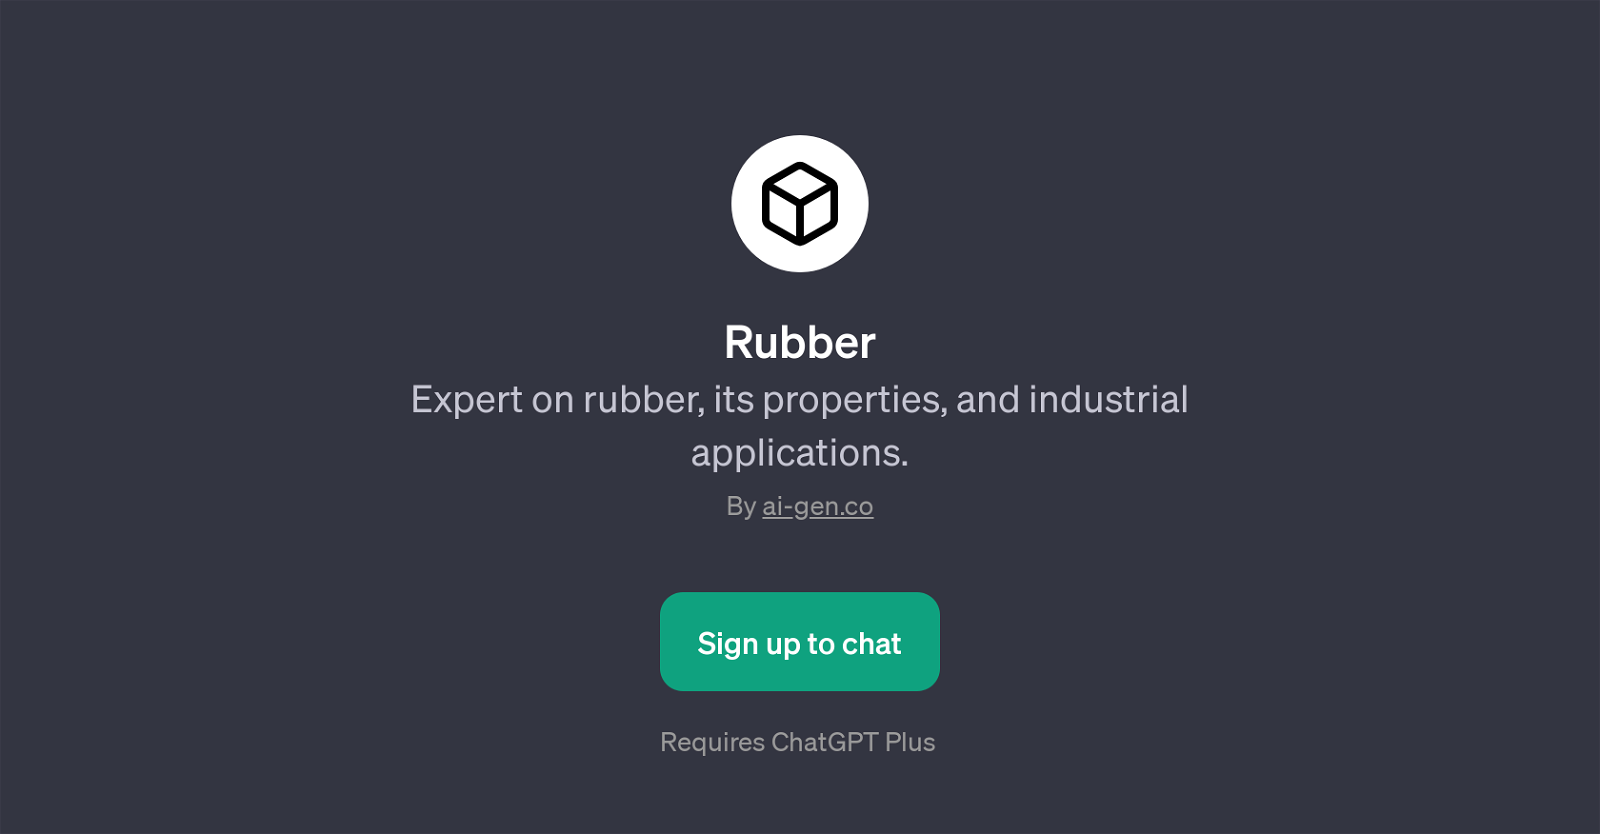 RubberExpert website